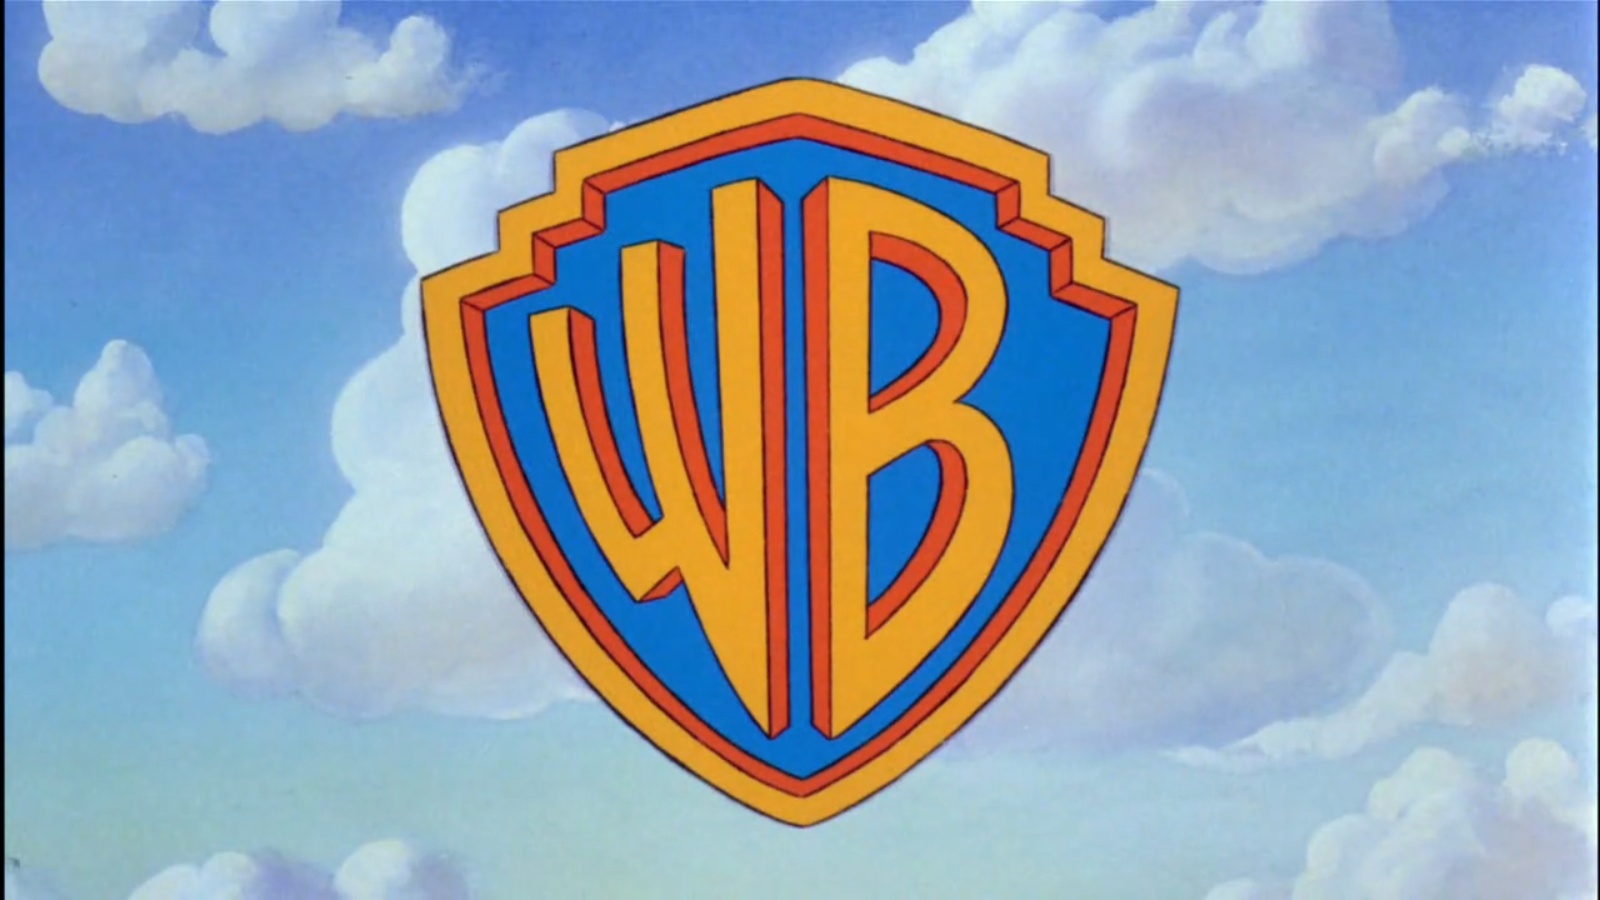 Варнер брос. Уорнер бразерс Пикчерз. Warner brothers WB. Уорнер БРОС логотип. Ворнер БРОС студио.